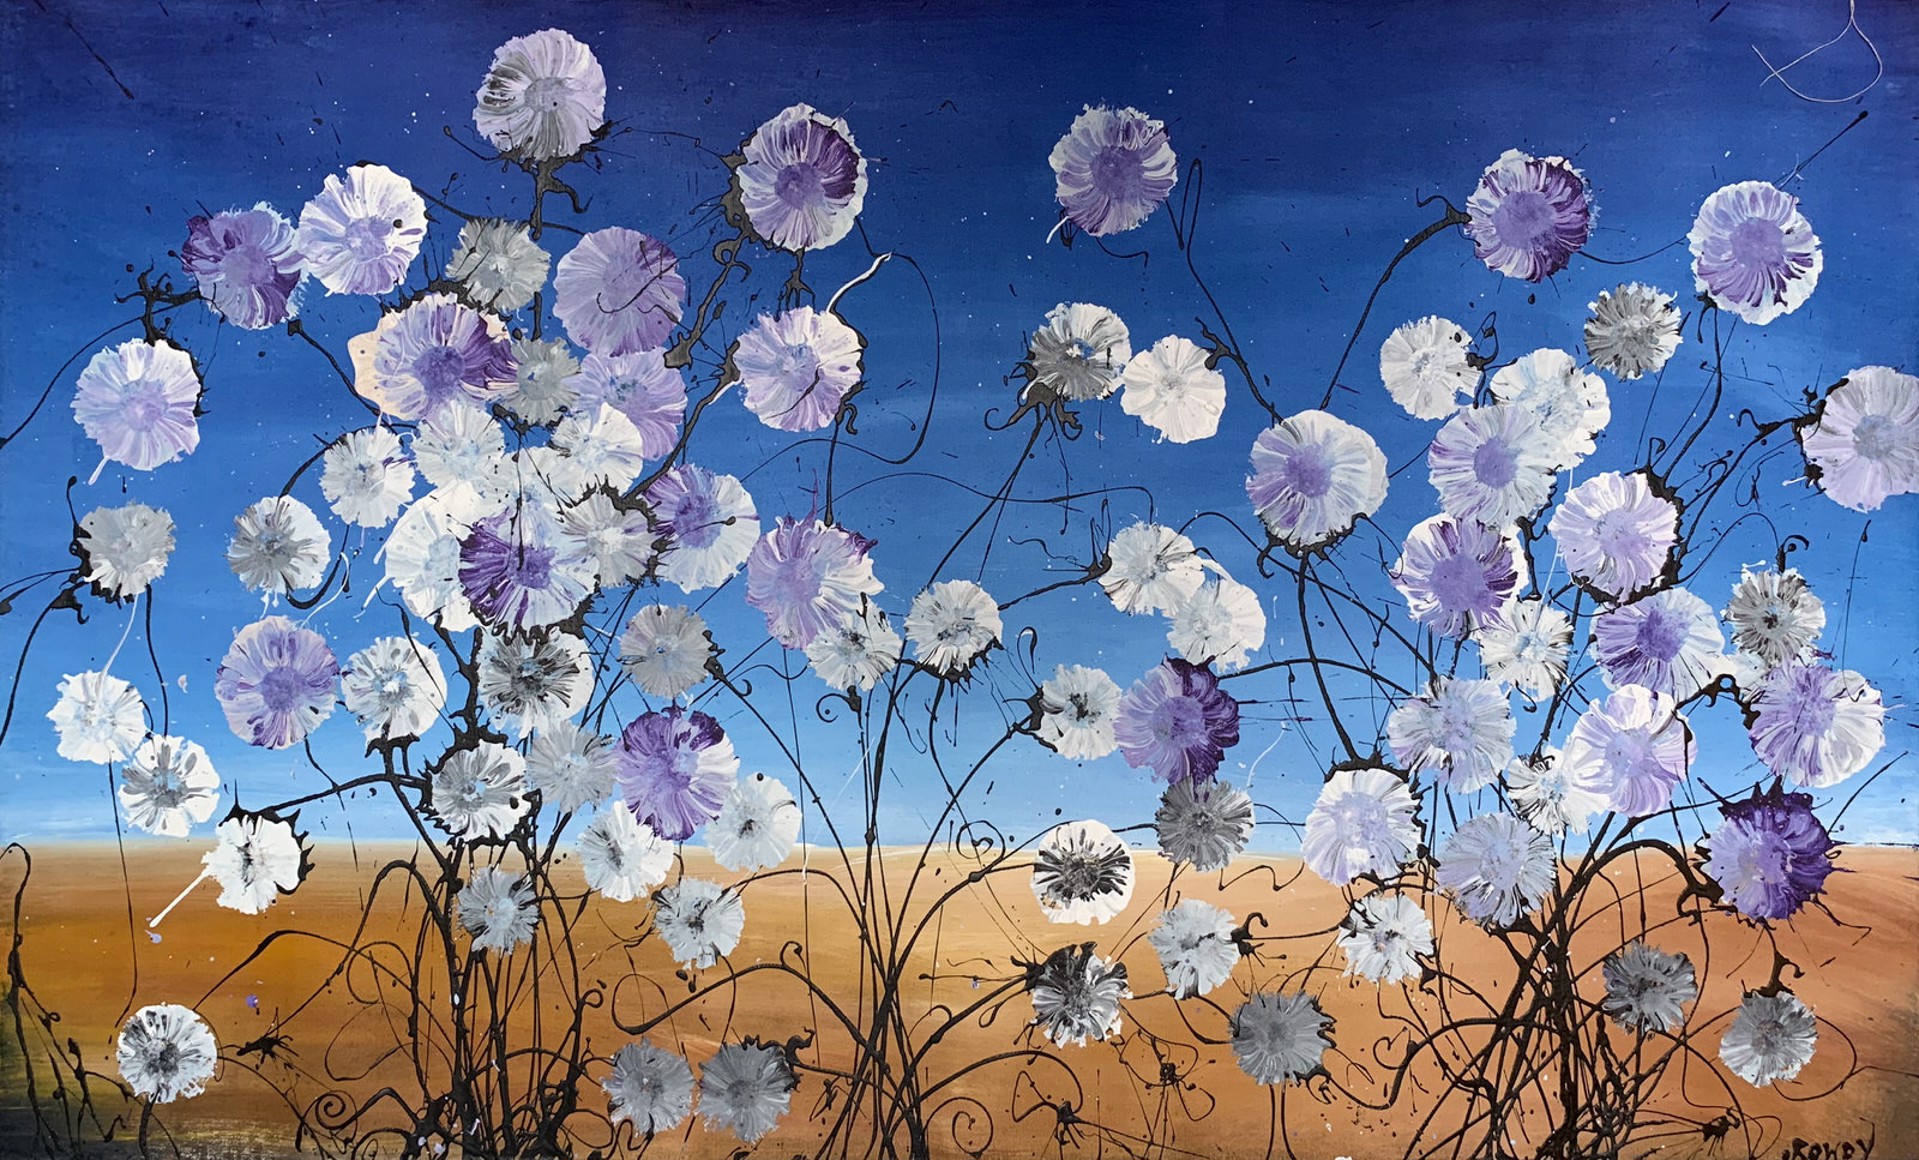 Wild Flowers by Rowdy Warren